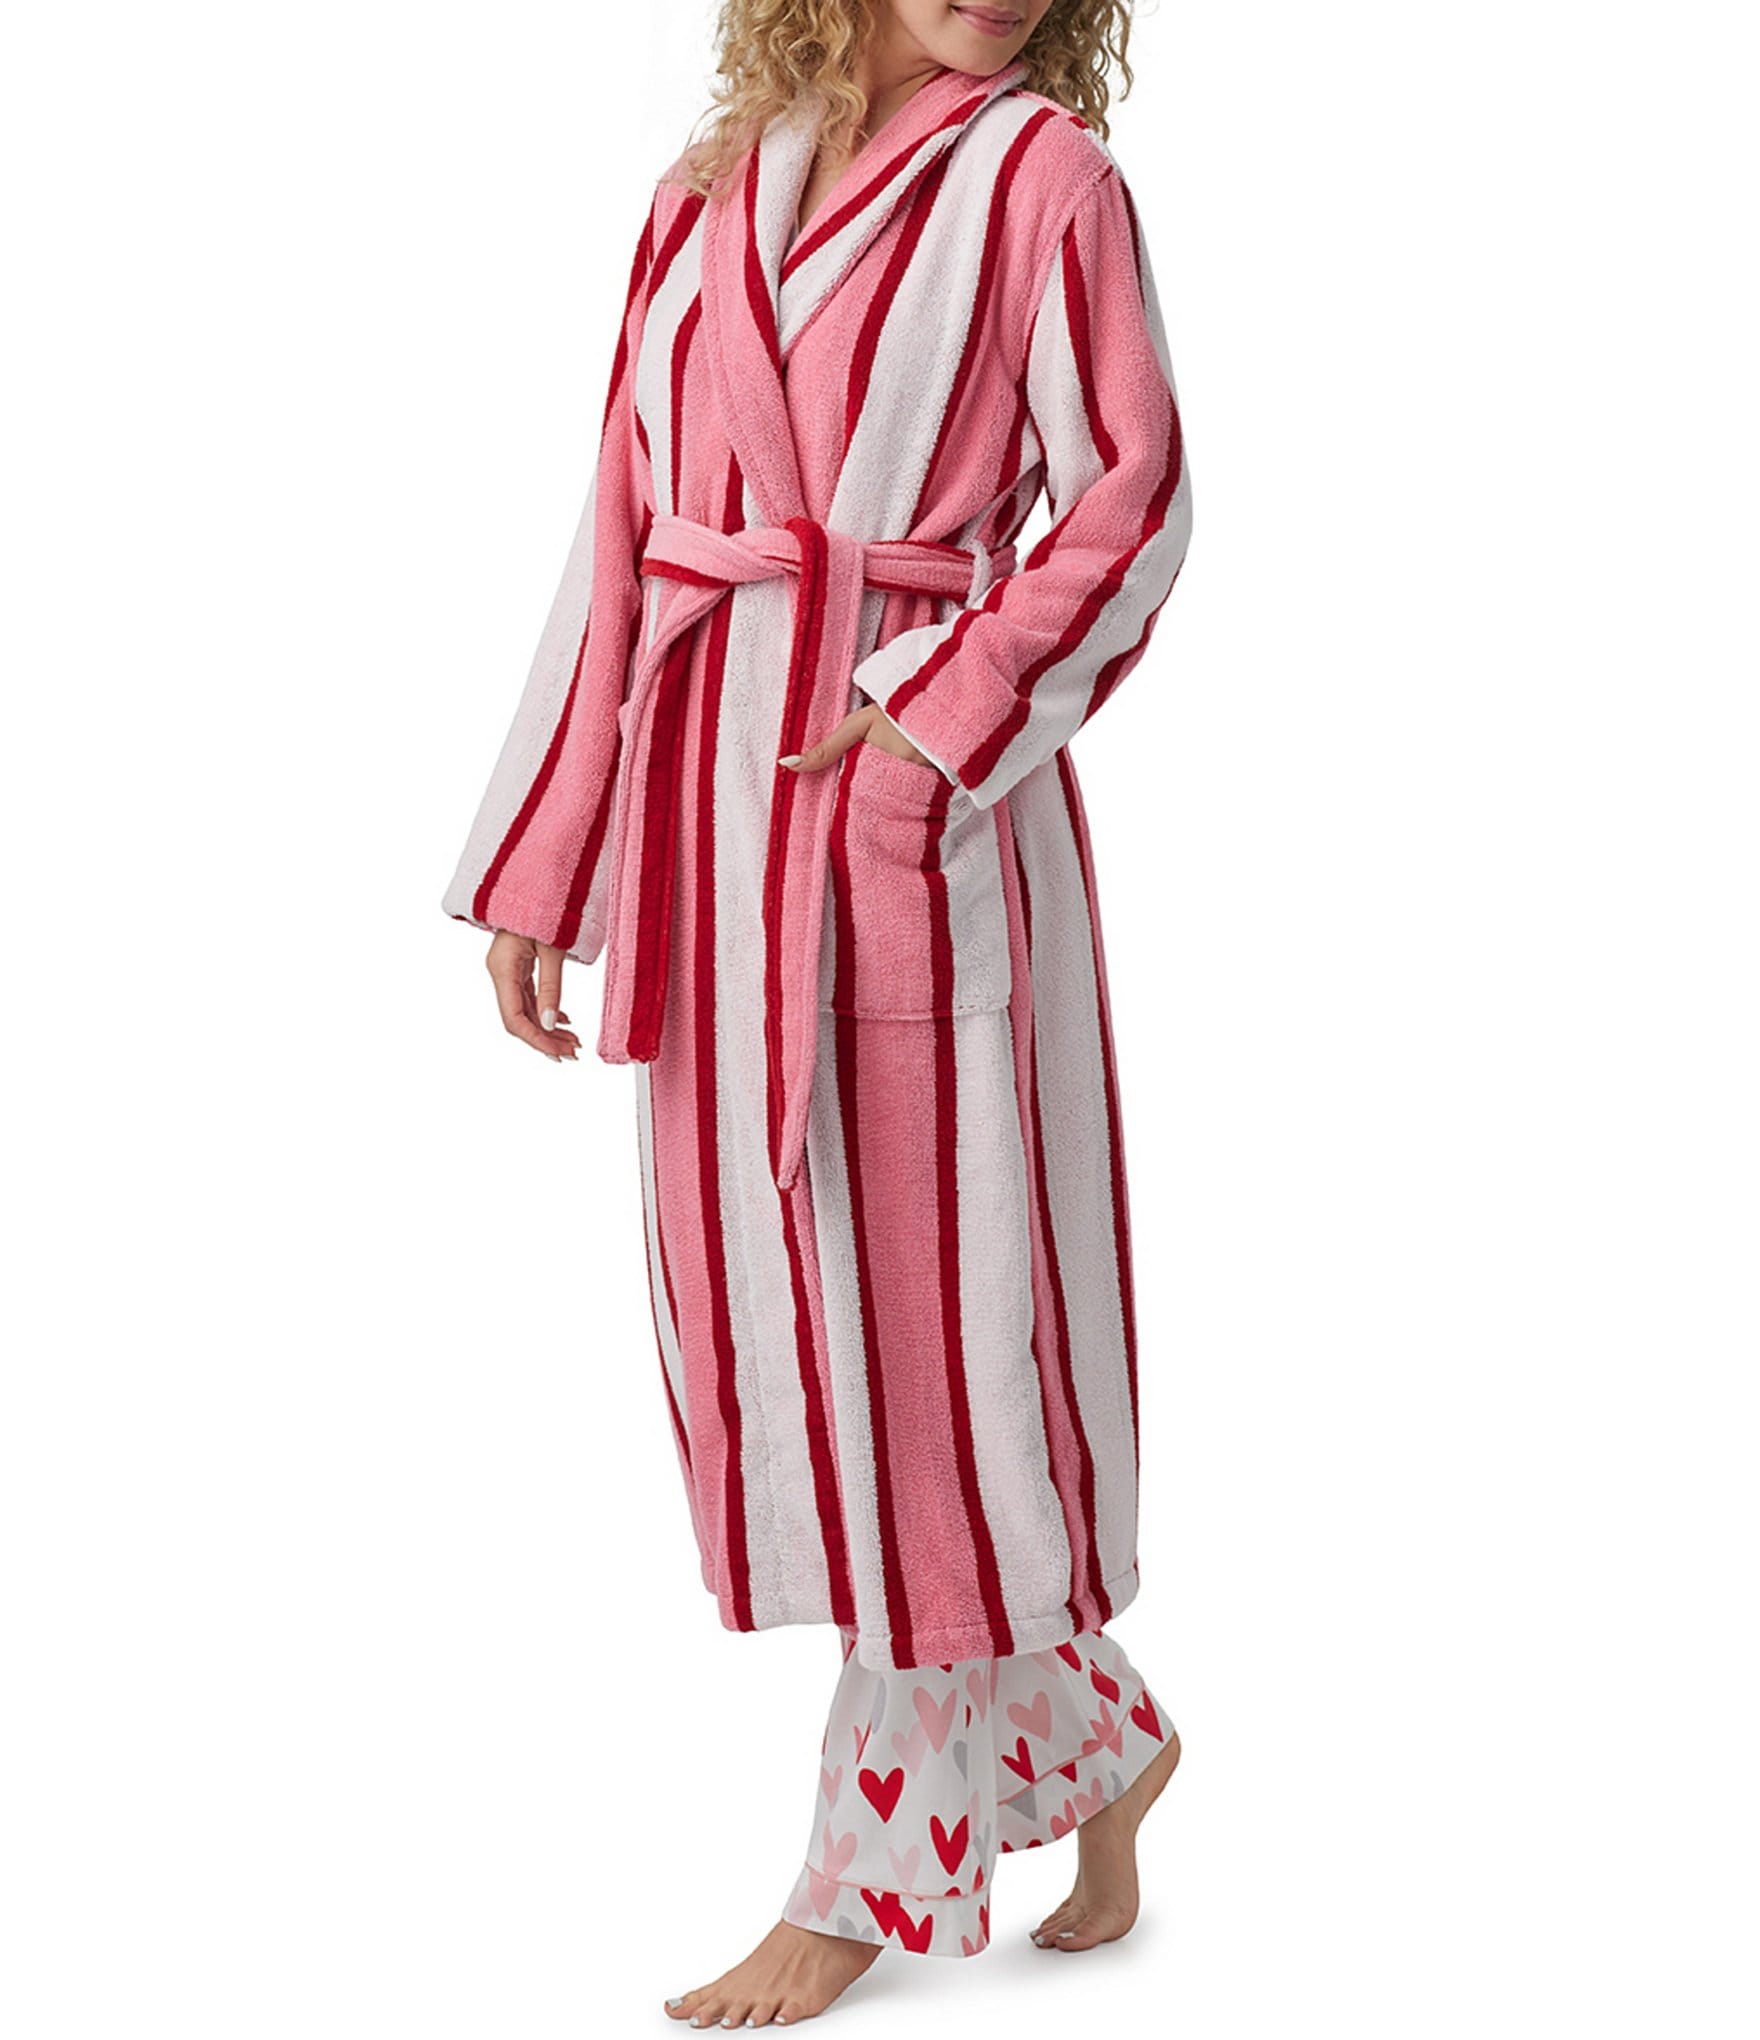 Miss Elaine Brushed Honeycomb Solid Knit Pajama Set